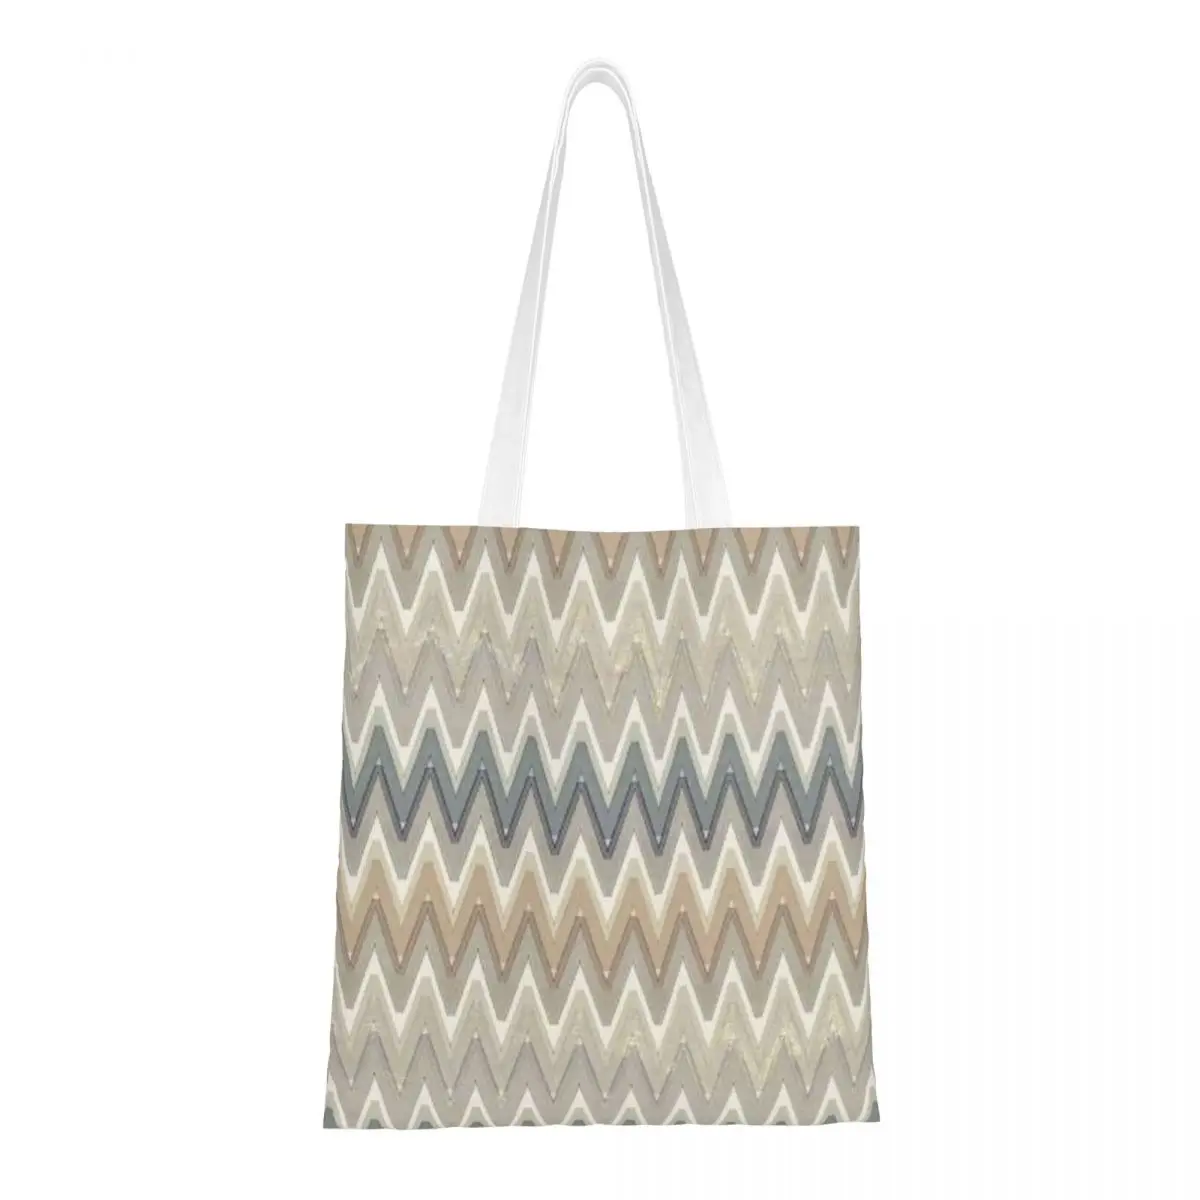 Изготовленная на заказ камуфляжная холщовая сумка для покупок с зигзагом, женские многоразовые продуктовые сумки в богемном геометрическом стиле для покупок